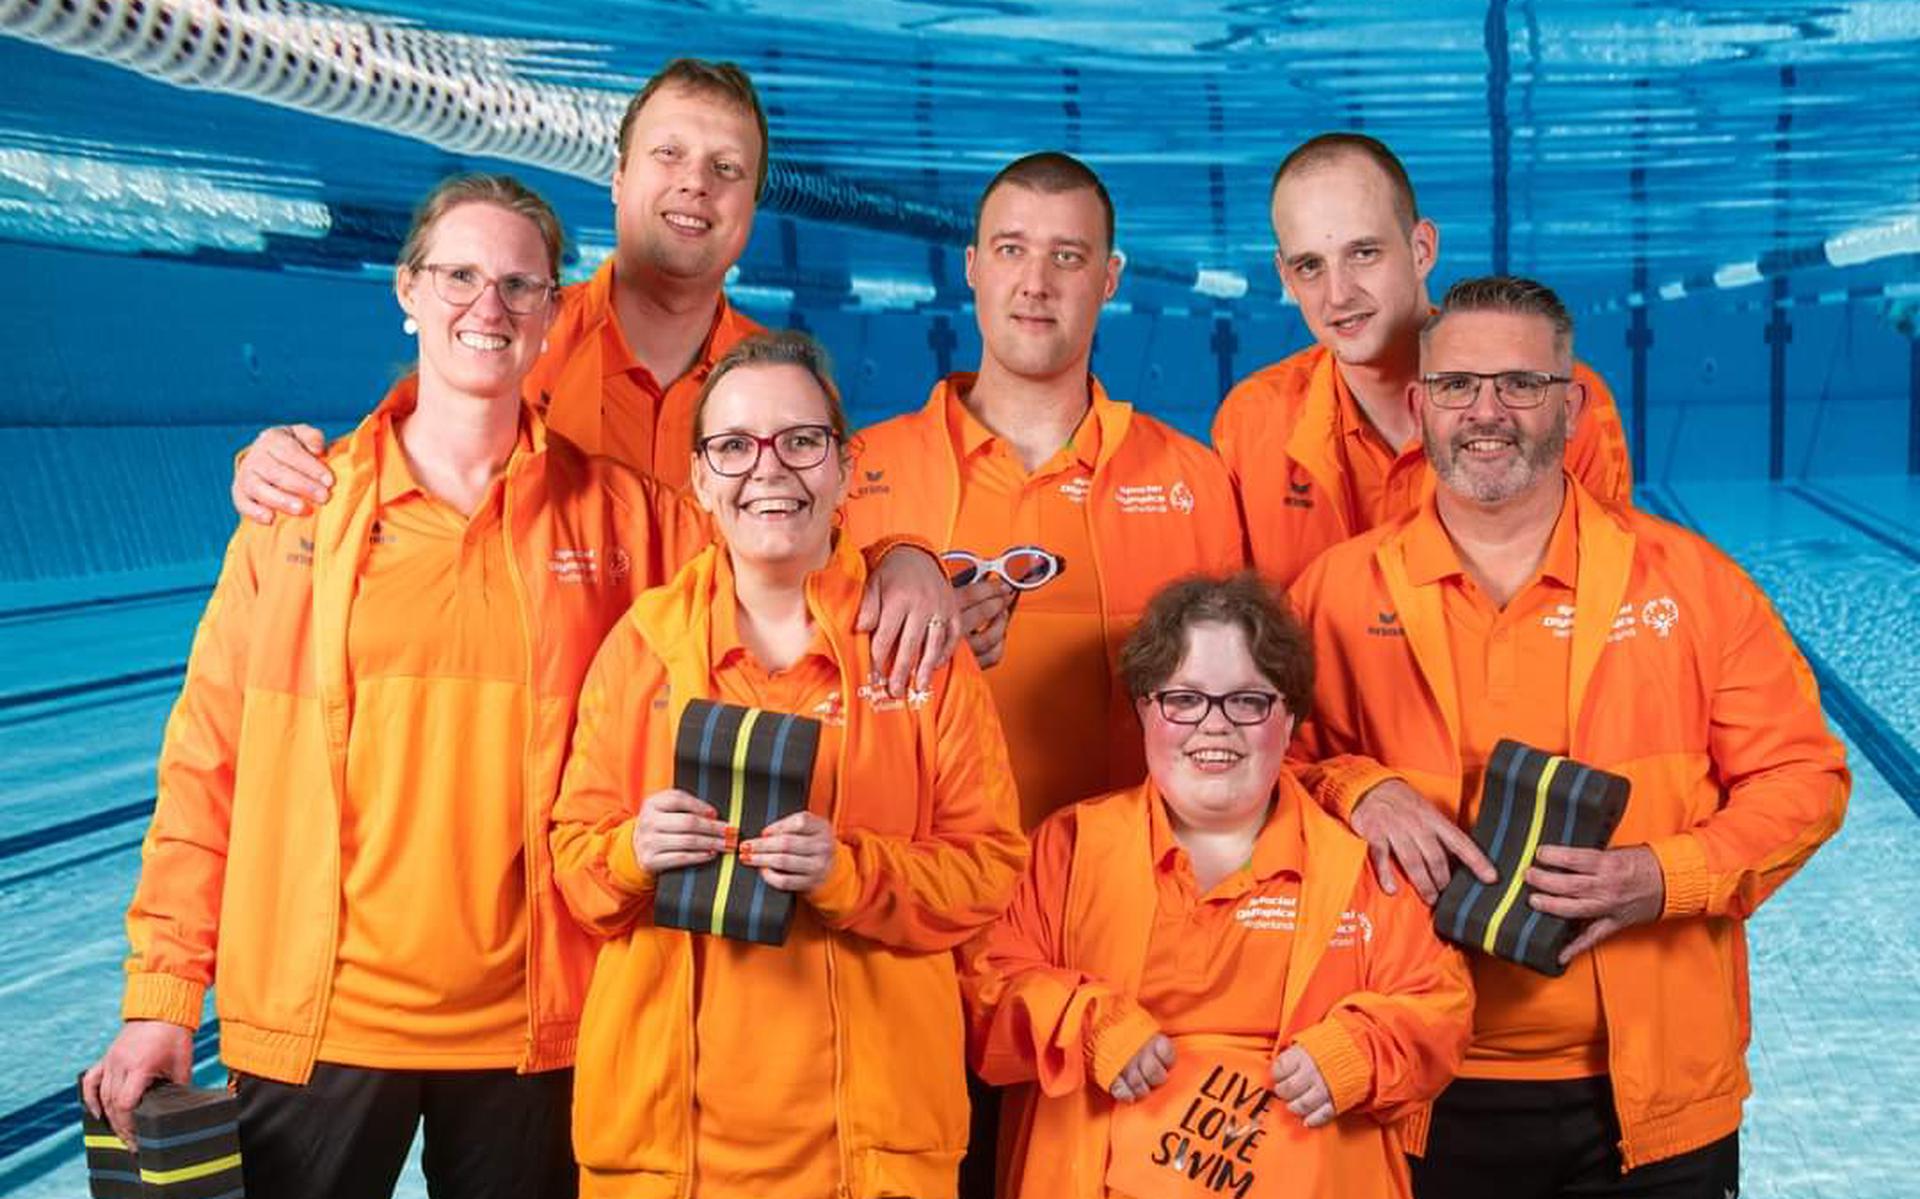 Zwemteam De Brug Midden-Groningen - met zwemmers Nicole, Risette, Jan, Rolf, Patrick en coaches Yvette en Martijn - bereidt zich voor op de Special Olympics World Games 2023 in Berlijn.